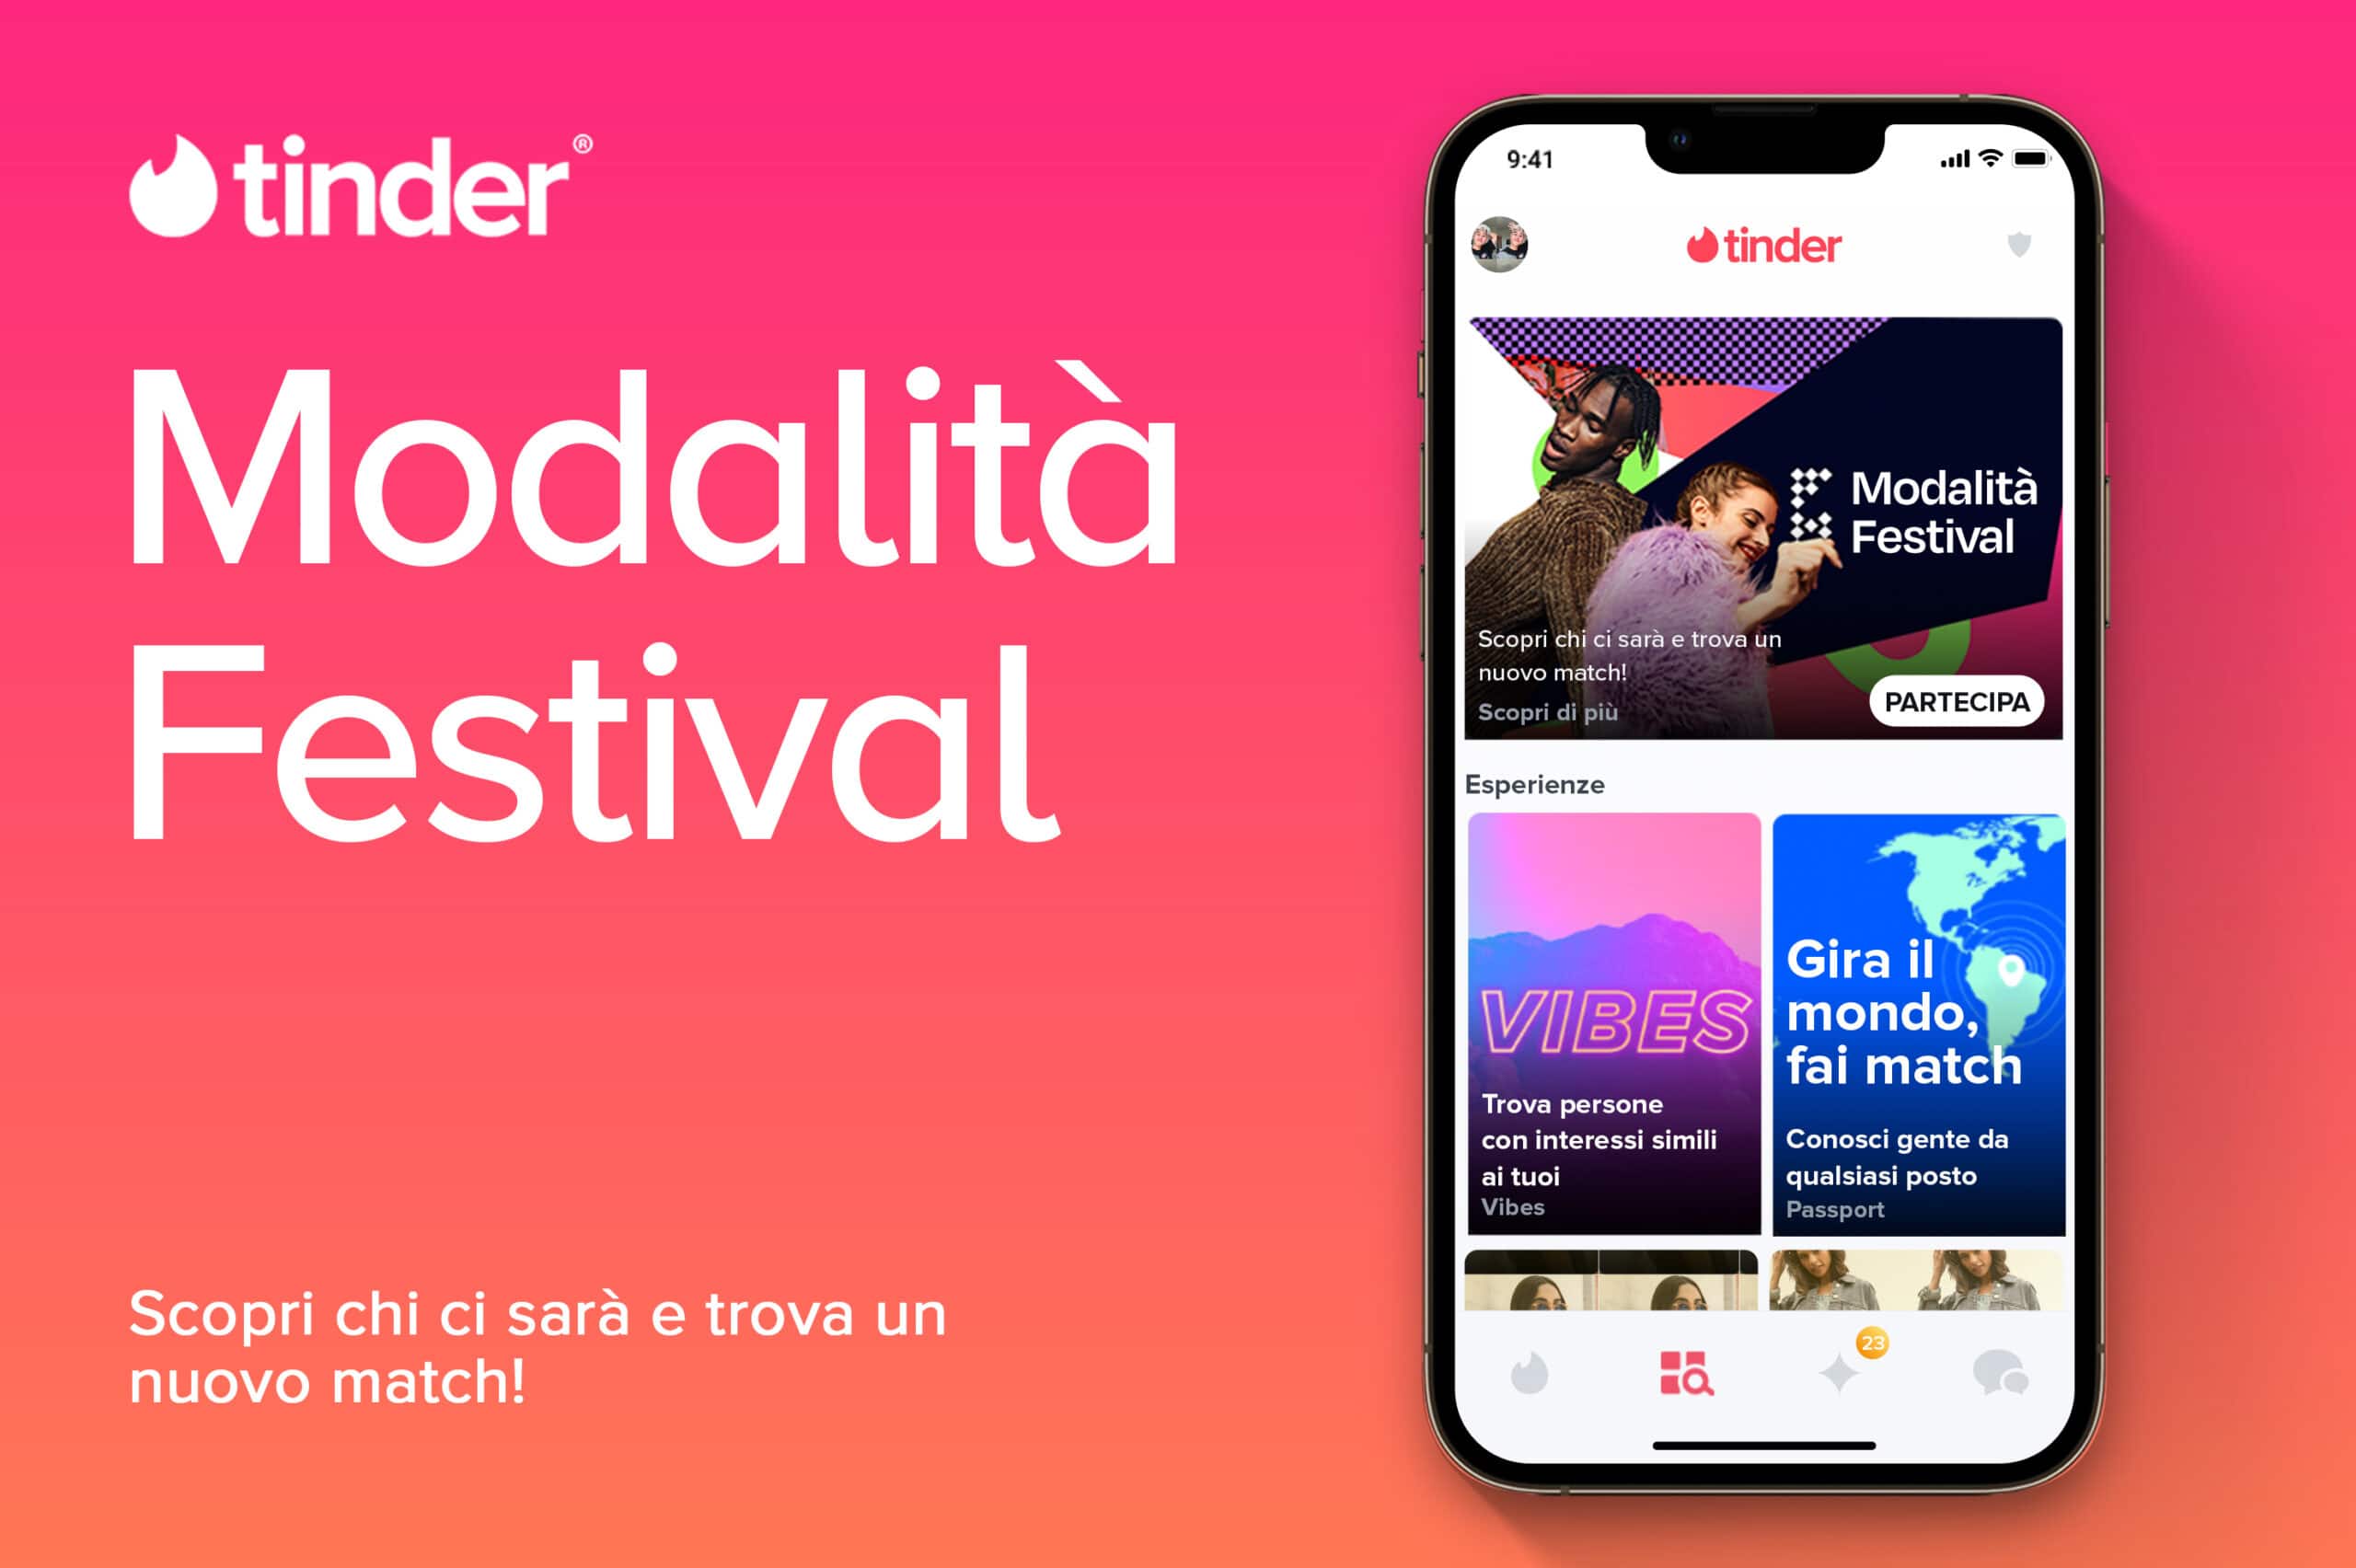 Musica e incontri dal vivo: Tinder lancia la Modalità Festival thumbnail